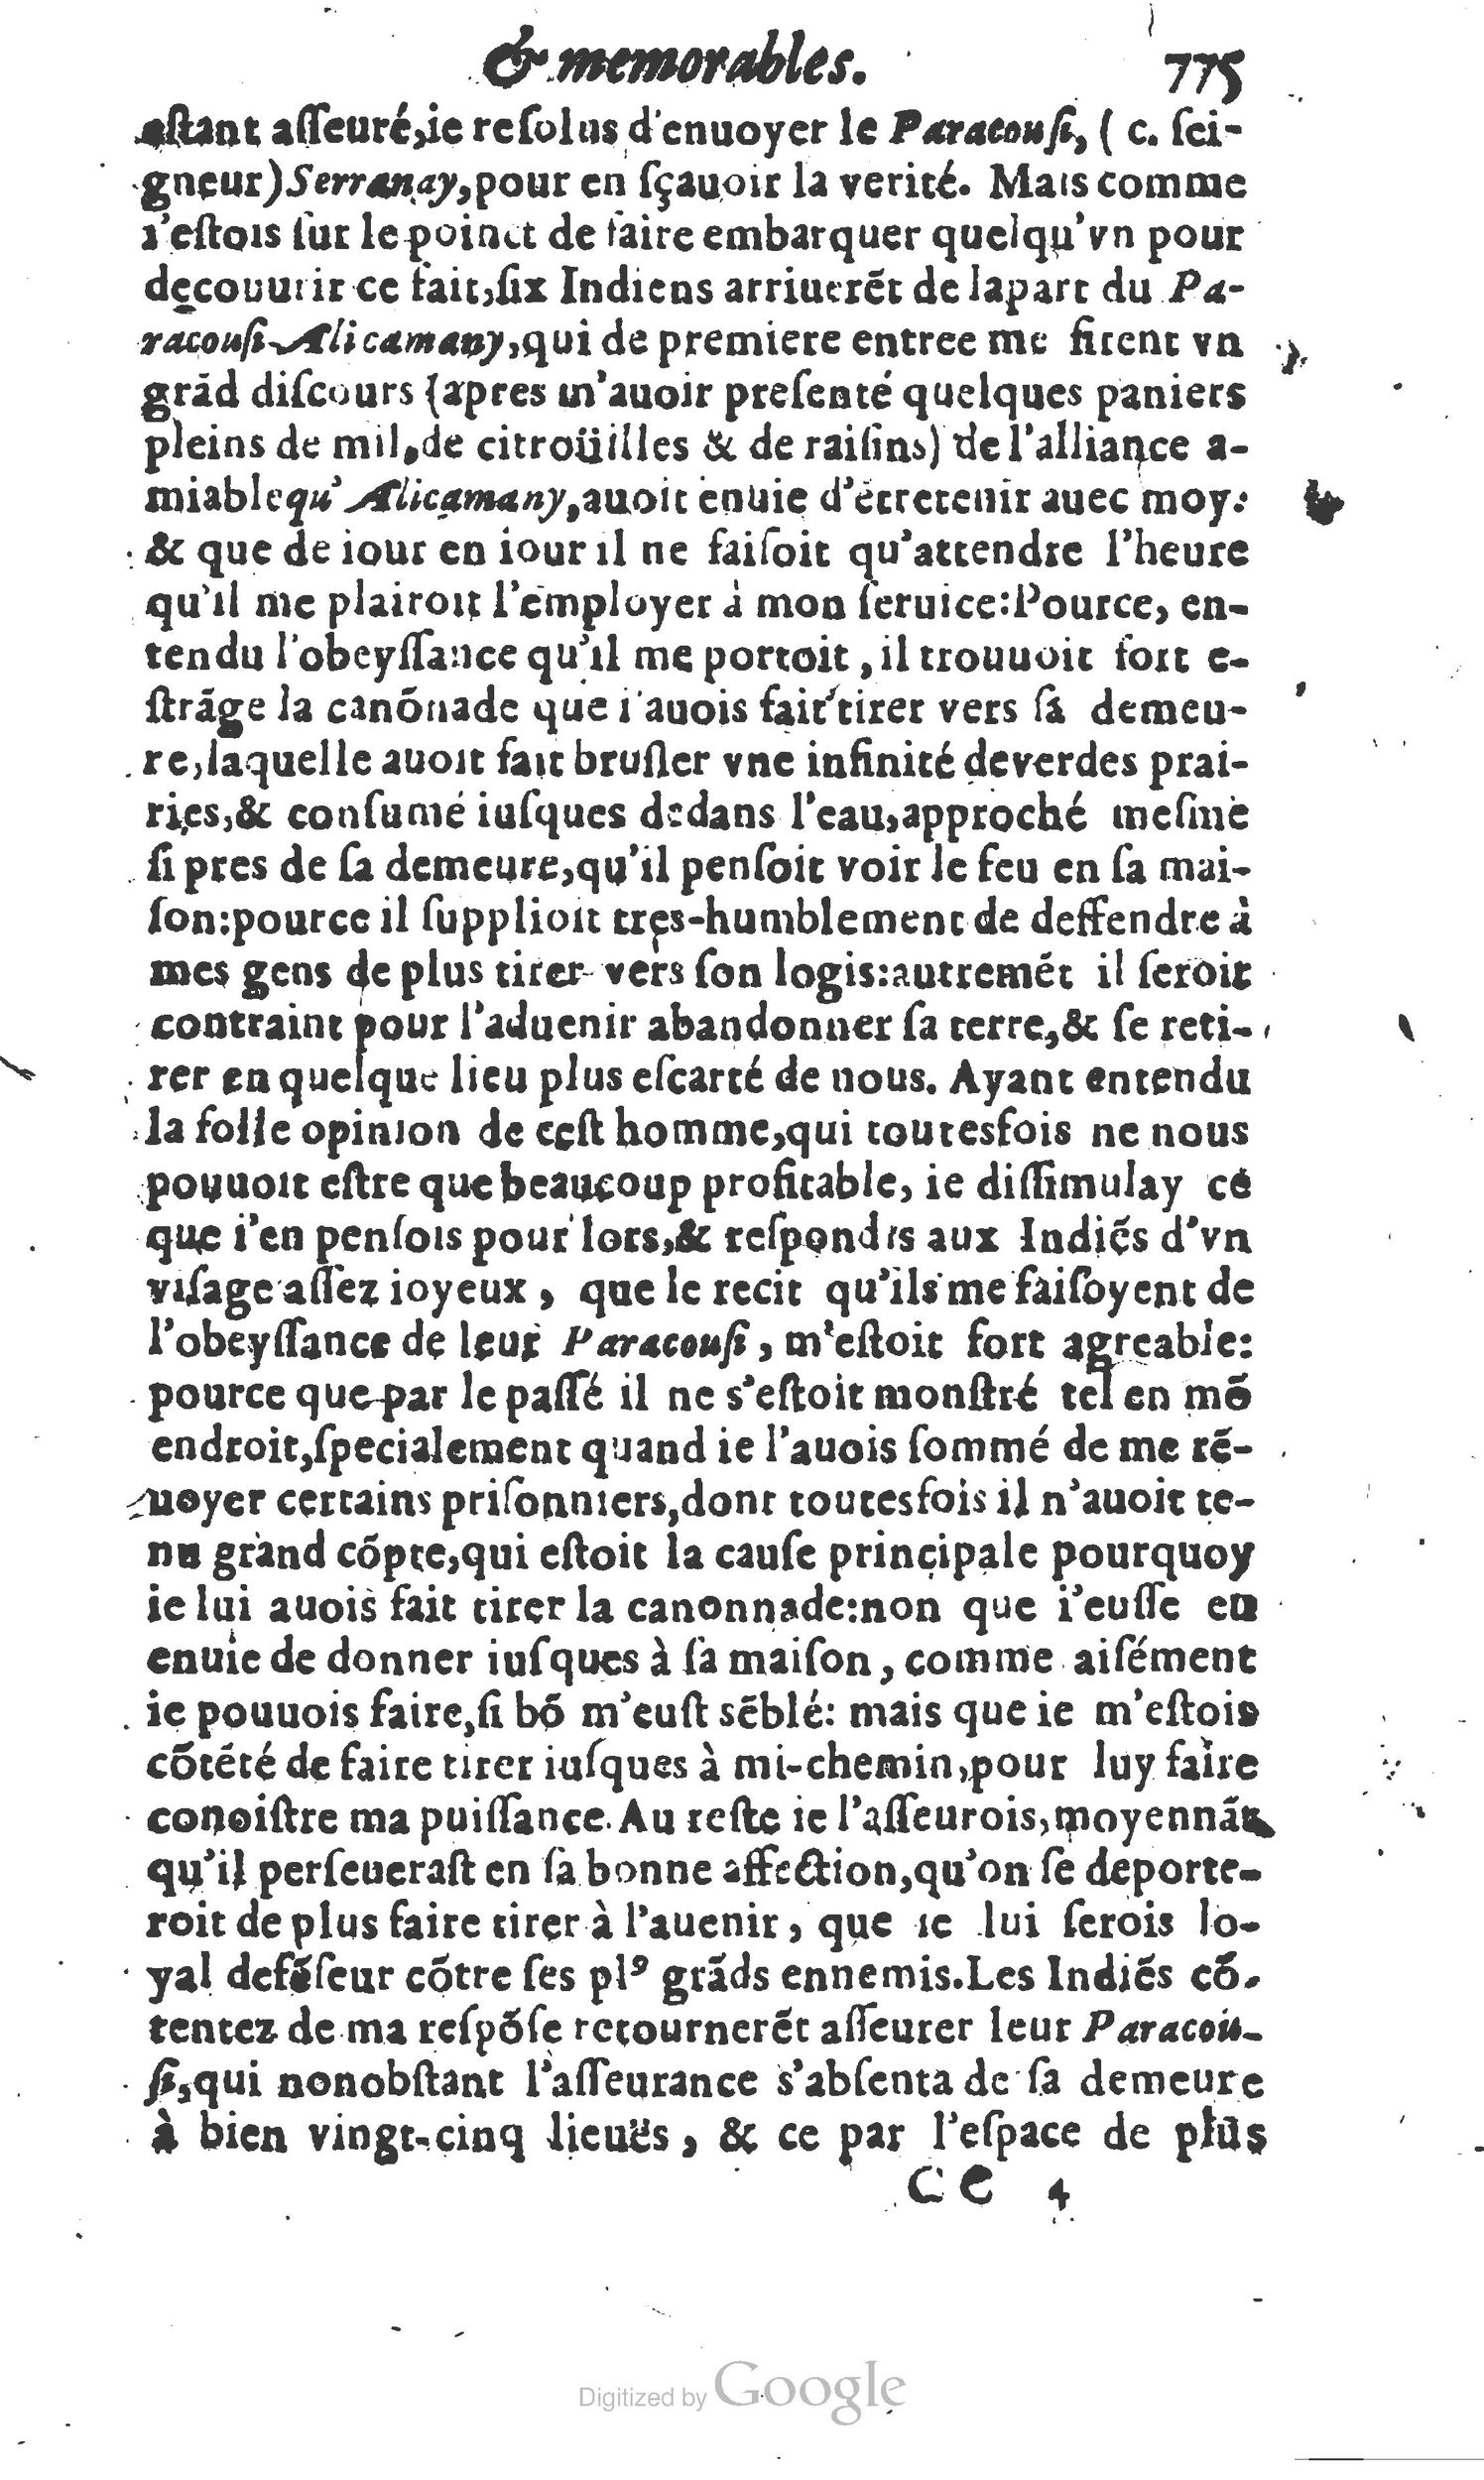 1610 Trésor d’histoires admirables et mémorables de nostre temps Marceau Princeton_Page_0796.jpg